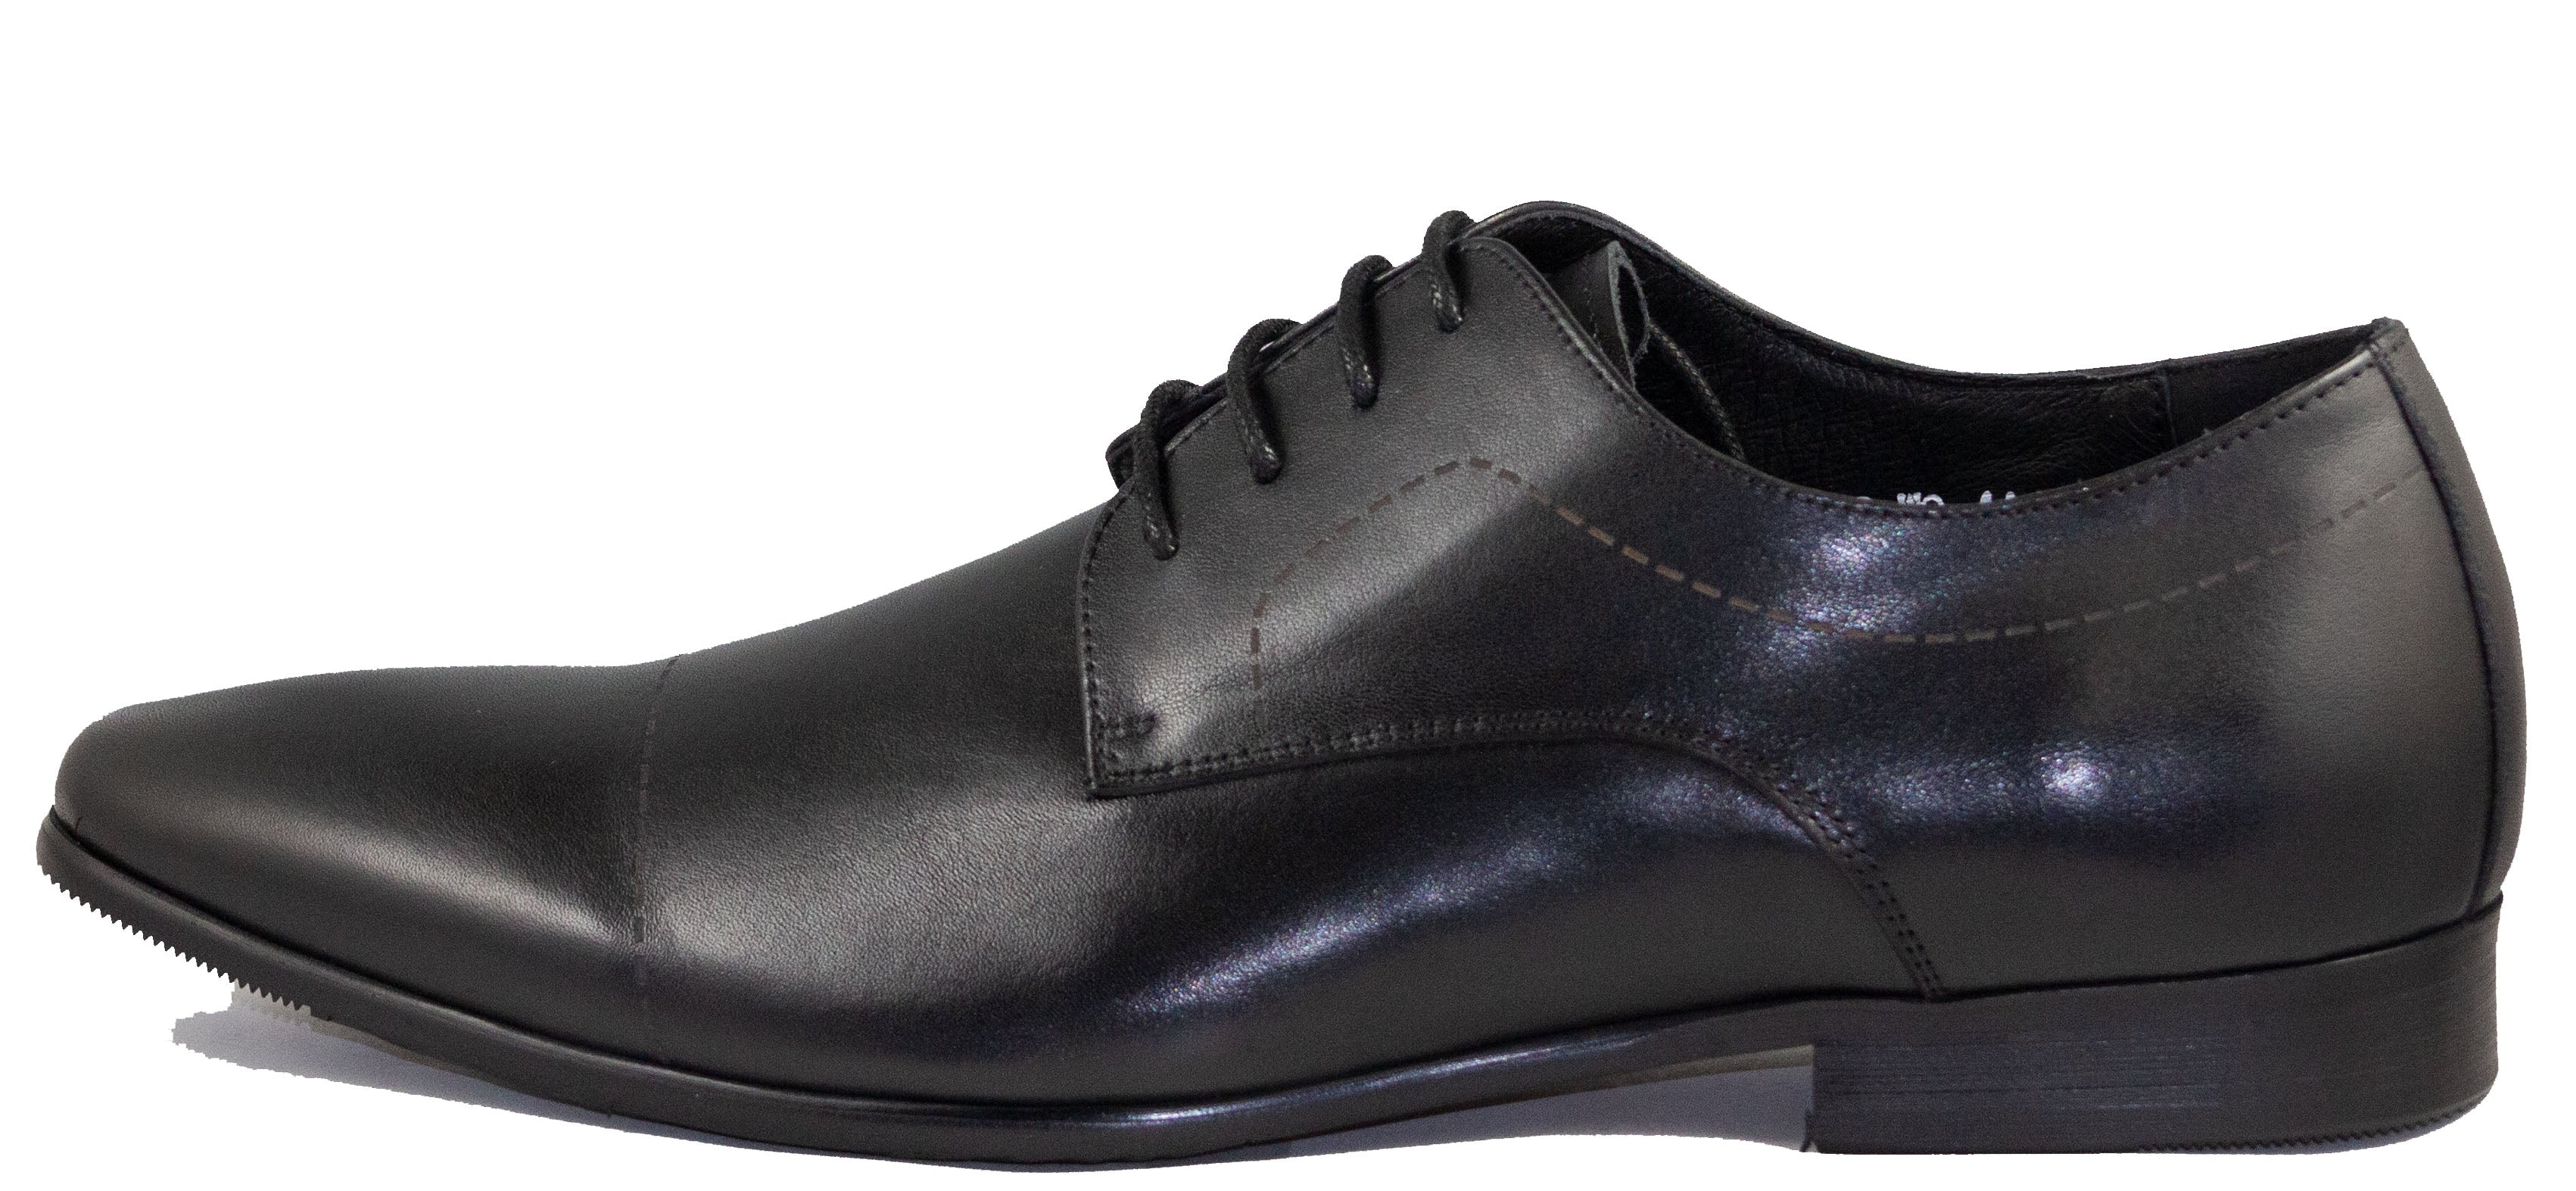 Mario Samello  Men's Cap-Toe Dress Shoes  LX10-W9